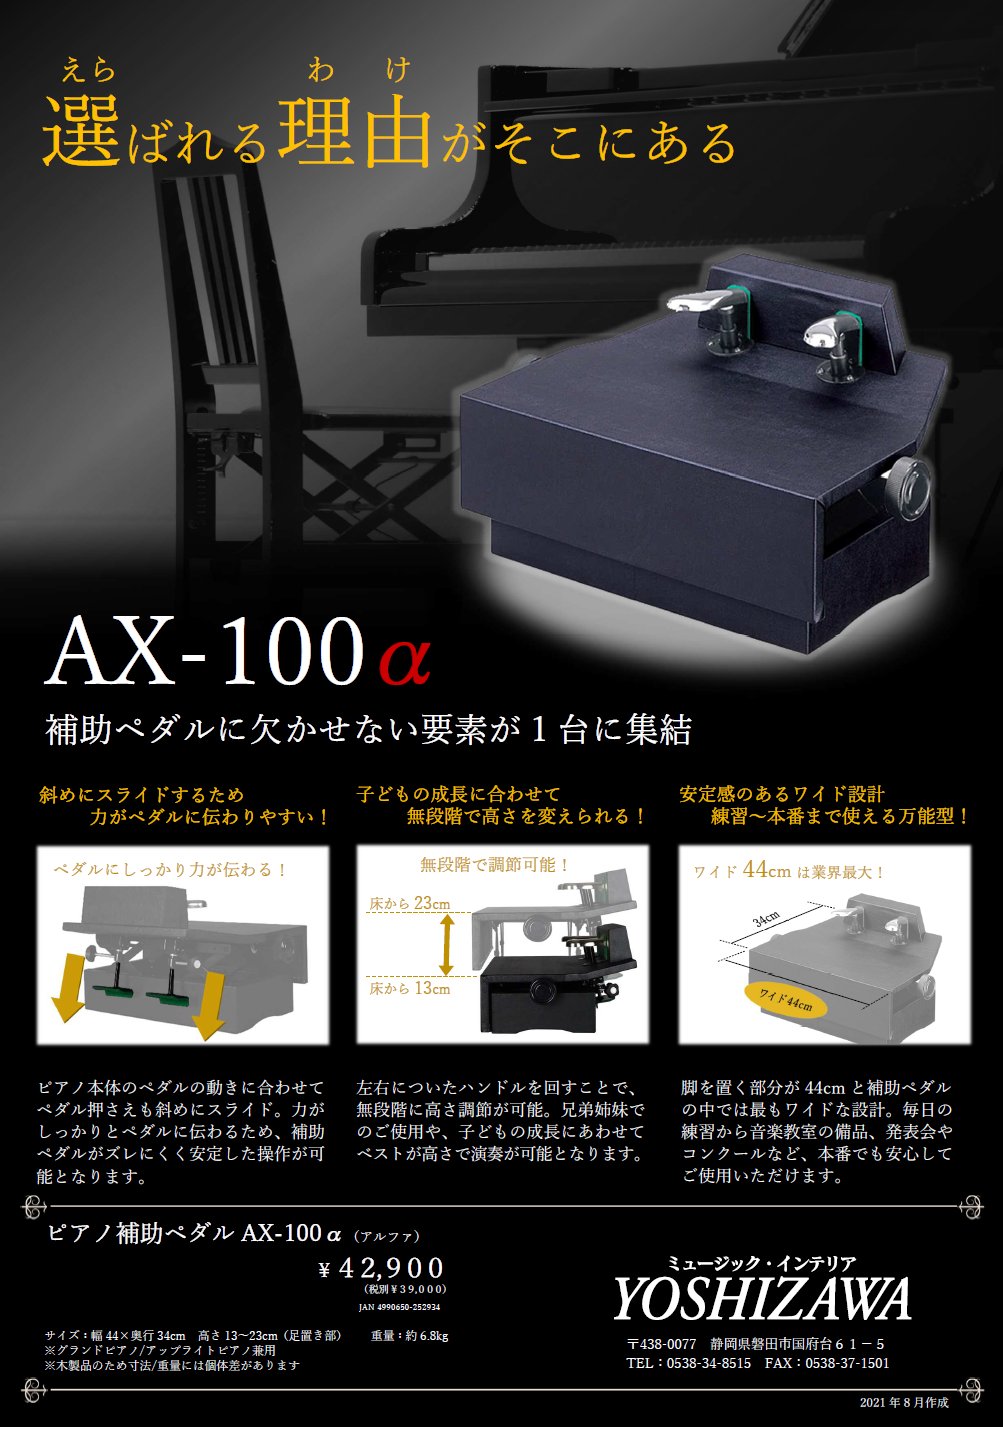 搬入設置サービス付 ピアノ補助ペダルYOSHIZAWA AX-100α 通販